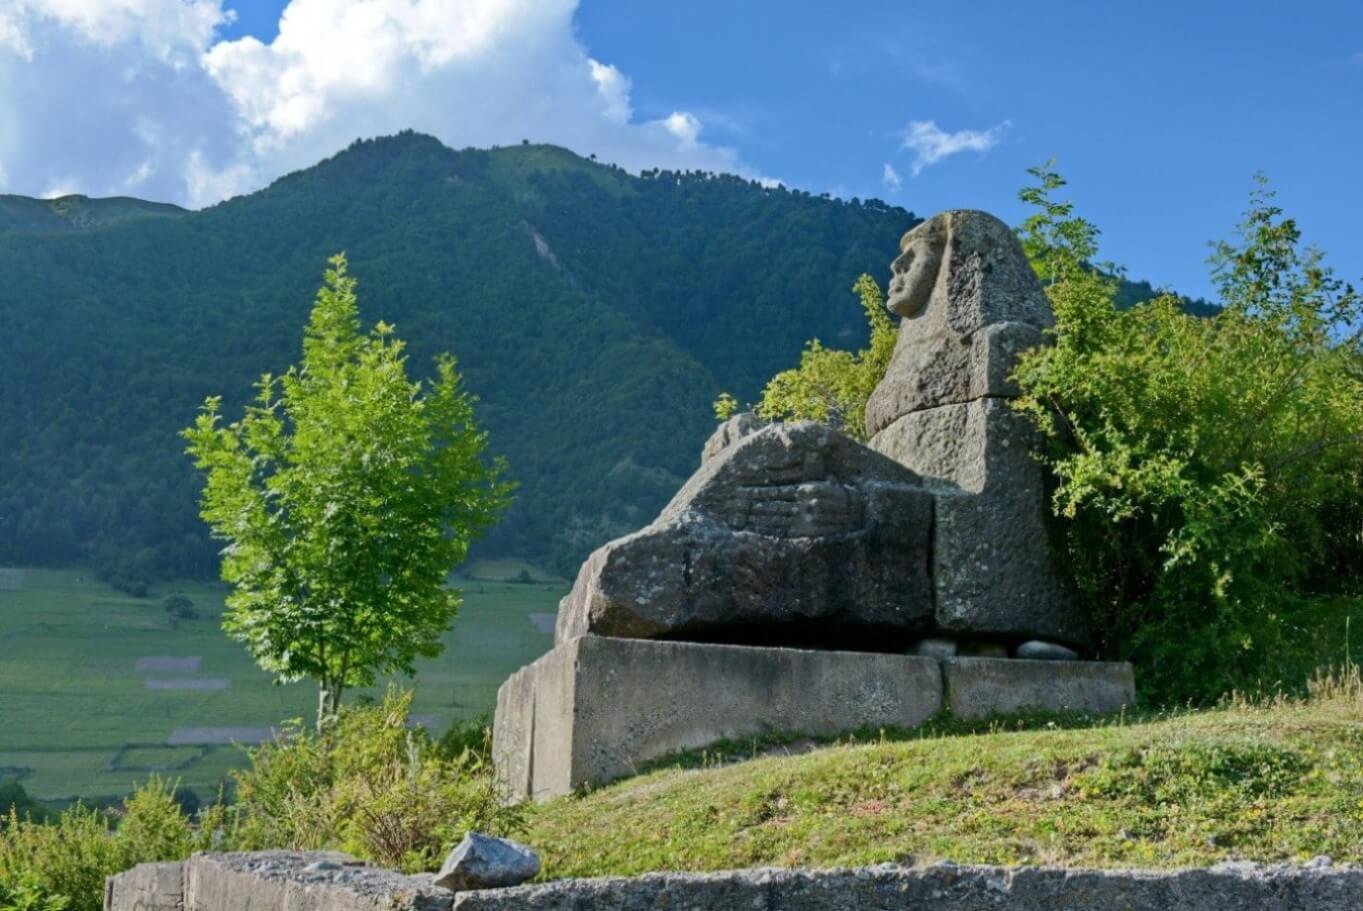 Отчёт о горном туристском походе 2 к.с. по Ц. Кавказу (Сванетия)